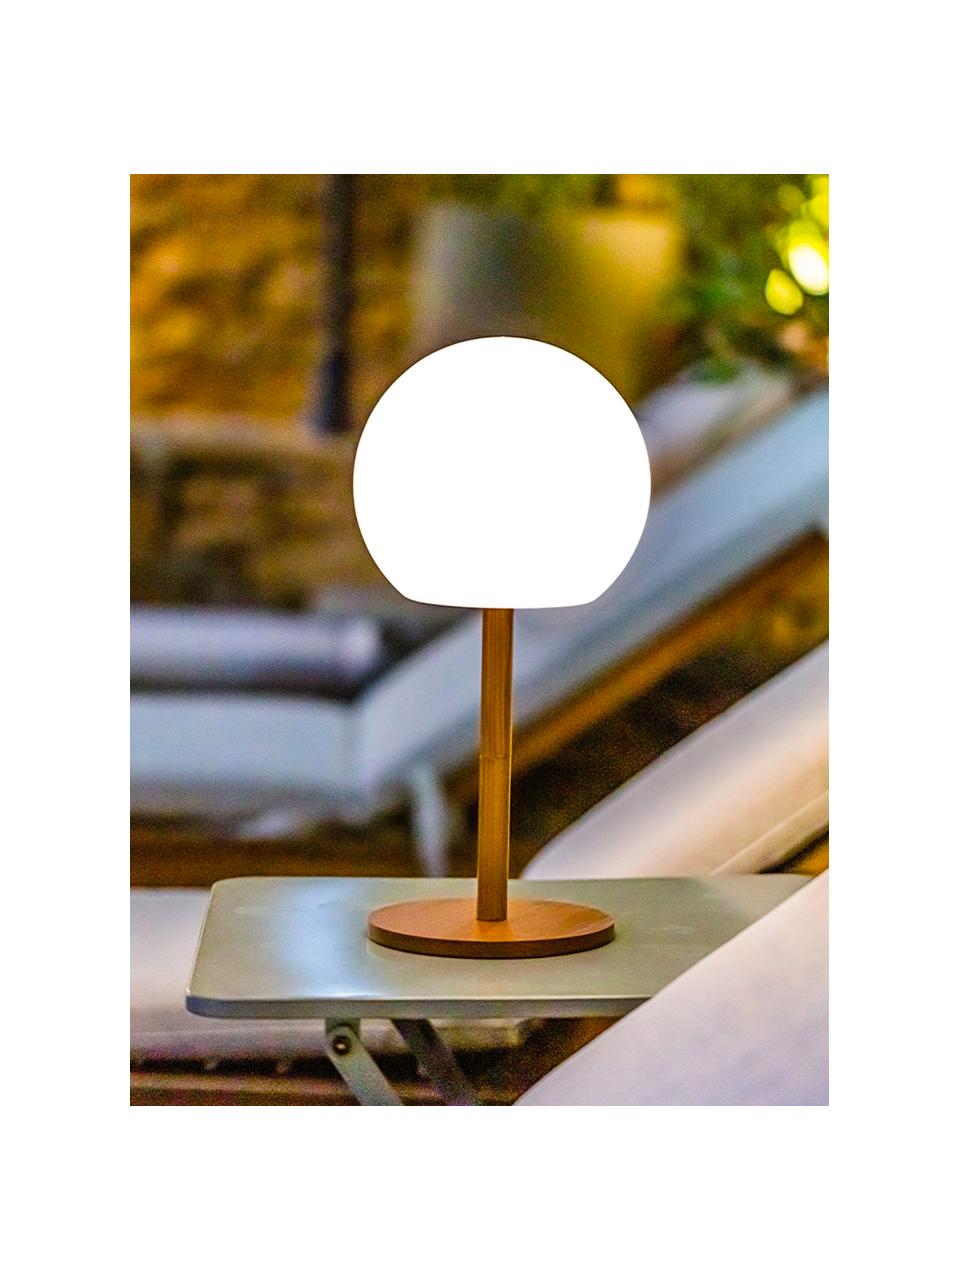 Lampada da tavolo da esterno mobile a LED dimmerabile con base in bambù Luny, Paralume: polietilene, Base della lampada: legno di bambù, Bianco, marrone chiaro, Ø 13 x Alt. 28 cm